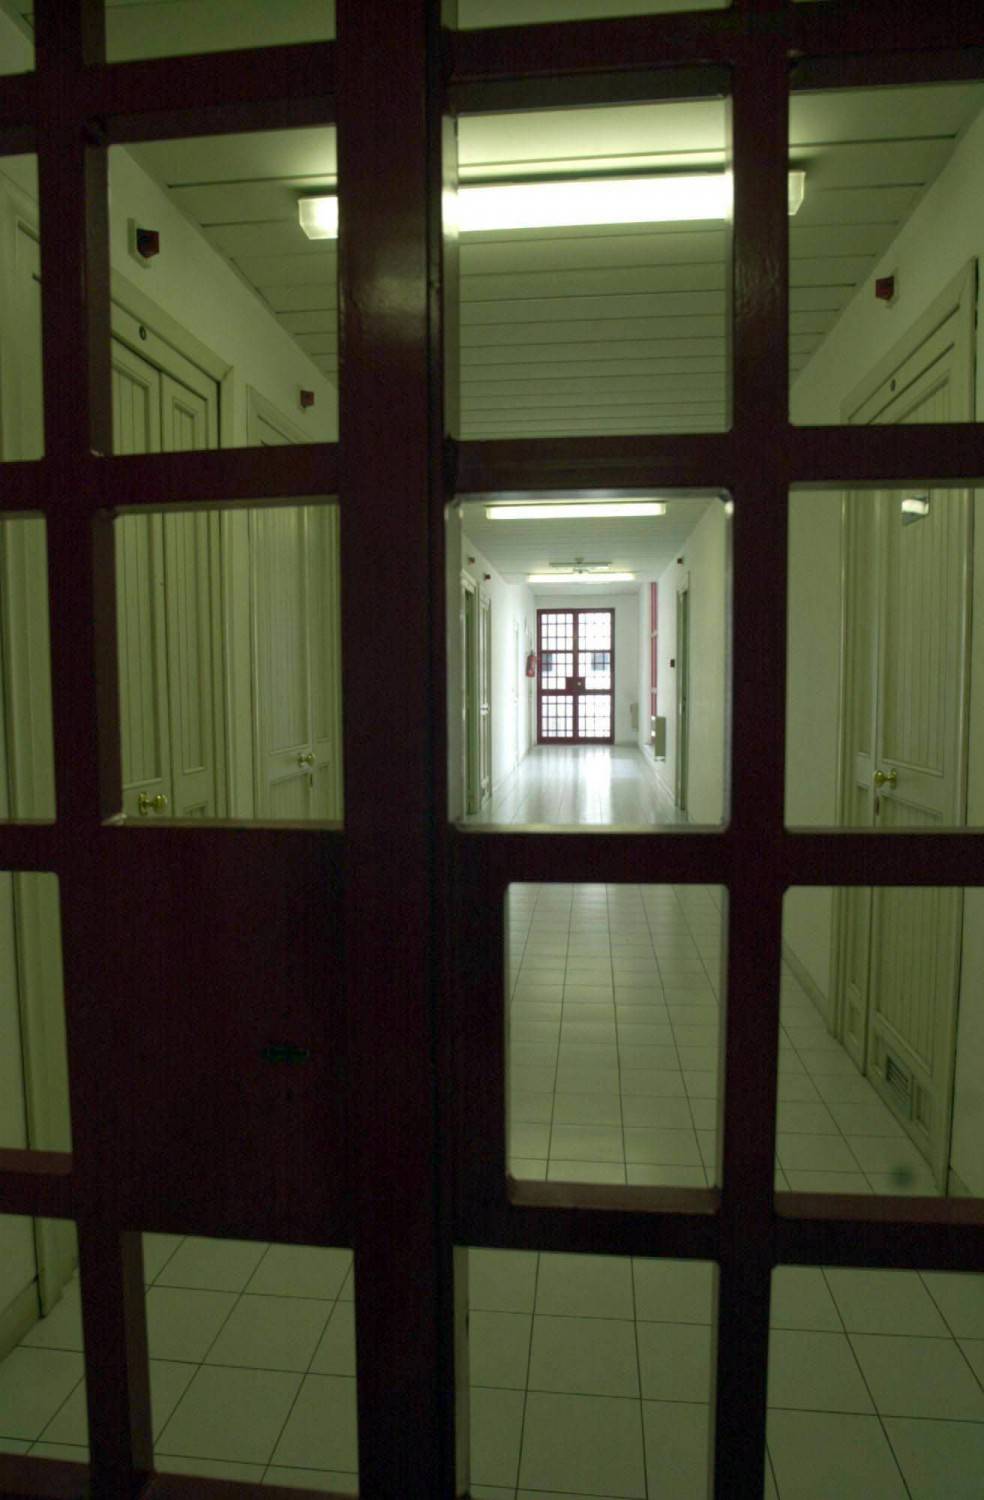 Spese per gli alloggi e consulenze, dalla Regione Lazio migliaia di euro per i detenuti